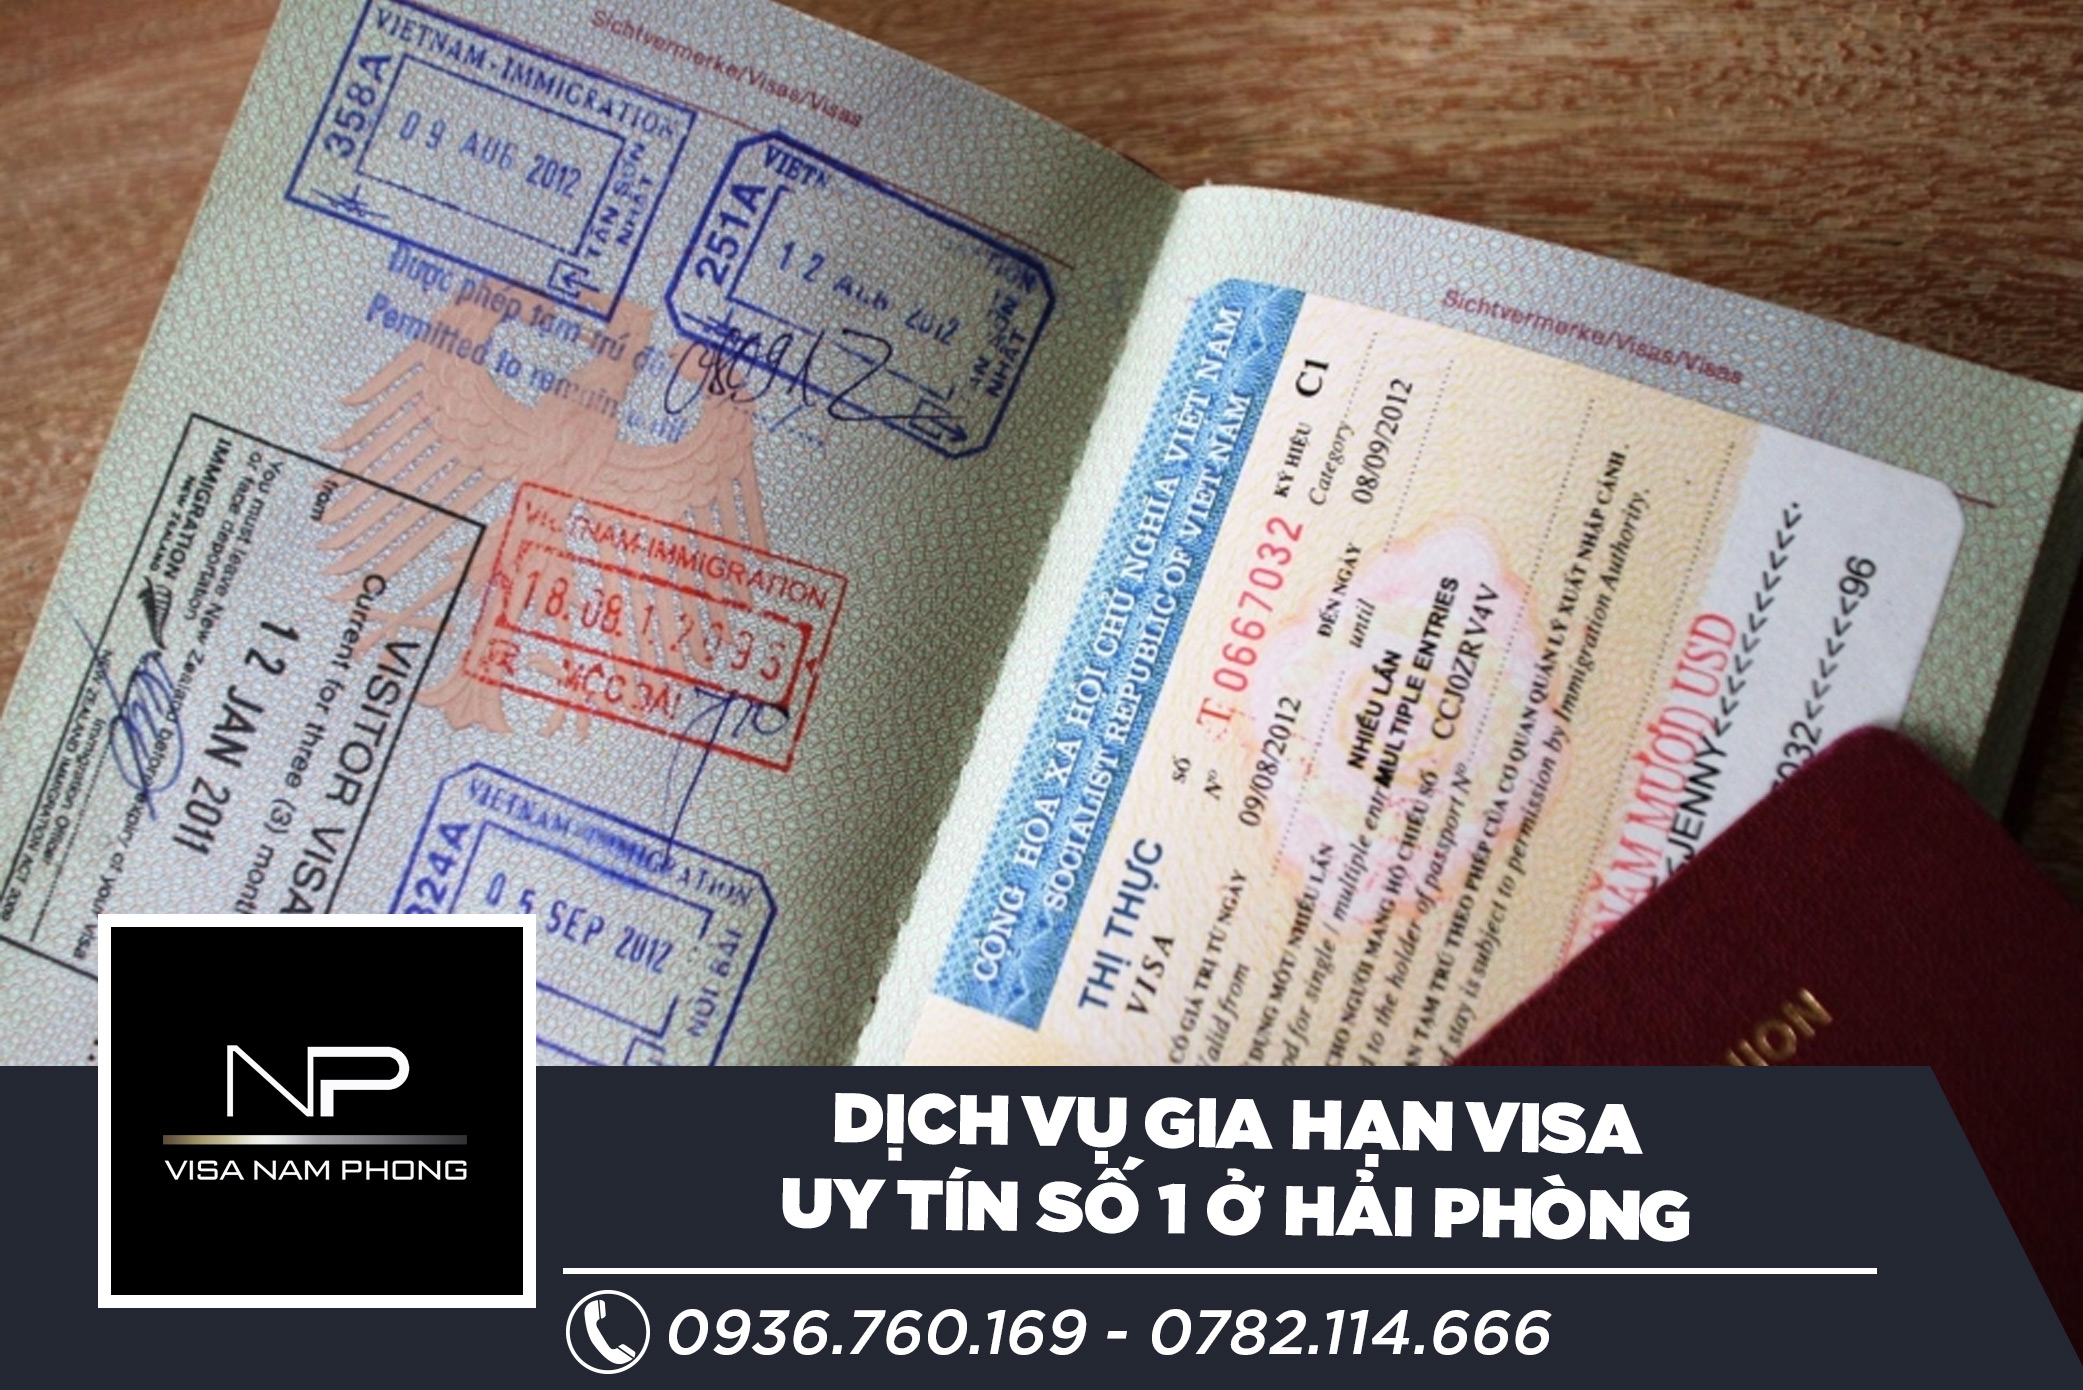 Dịch vụ gia hạn visa uy tín số 1 ở hải phòng